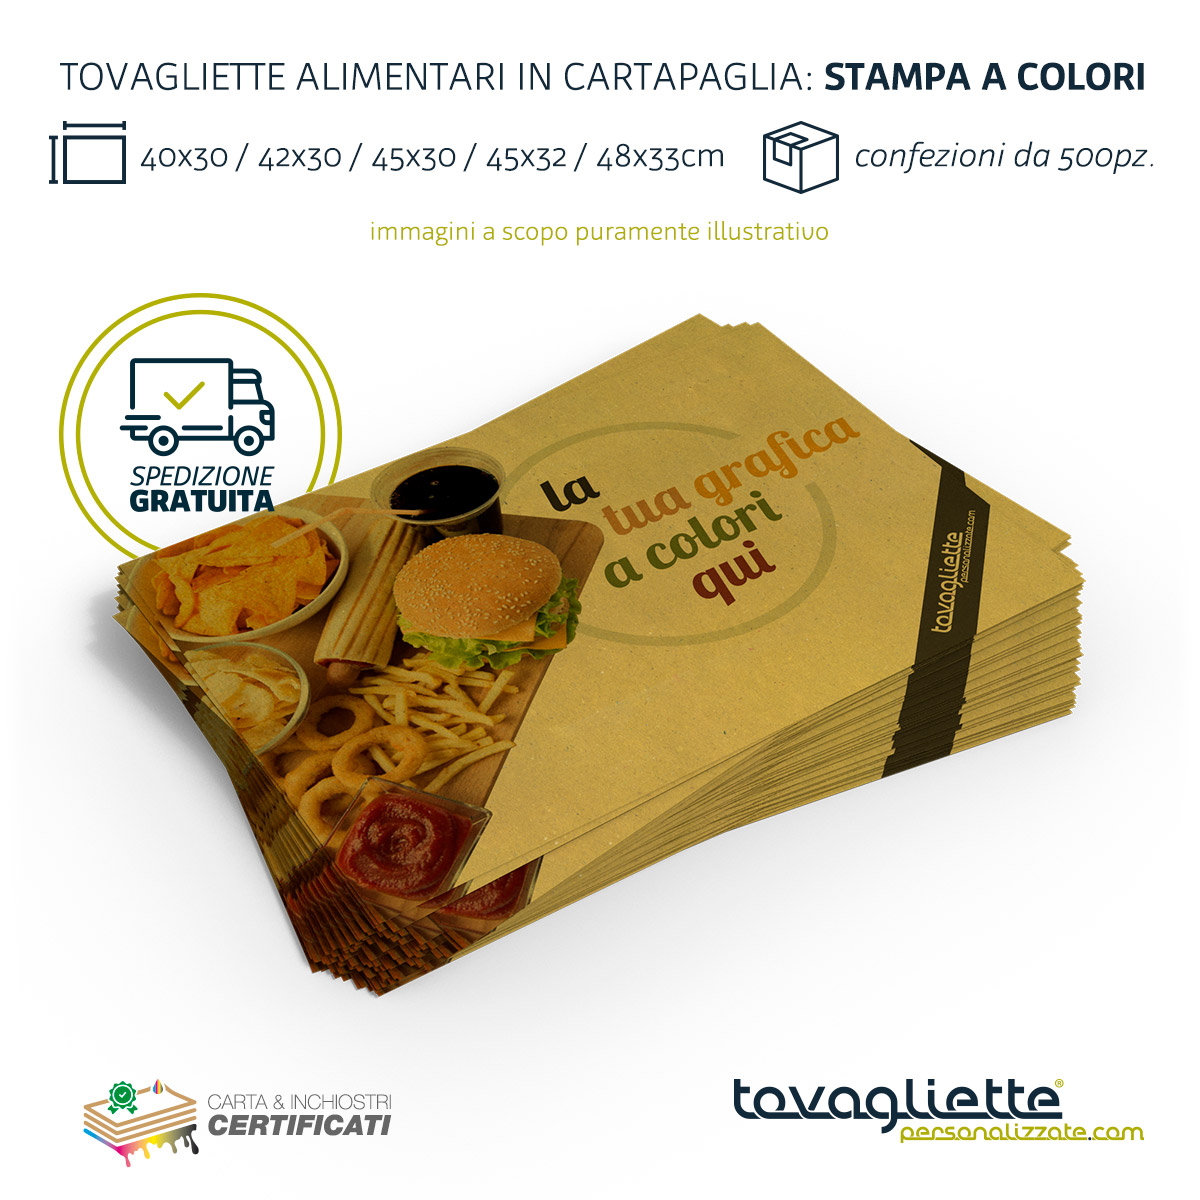 https://tovagliettepersonalizzate.com/tovagliette-alimentari/wp-content/uploads/2020/02/tovagliette-personalizzate-low-cost-carta-paglia-stampa-certificata-a-colori.jpg